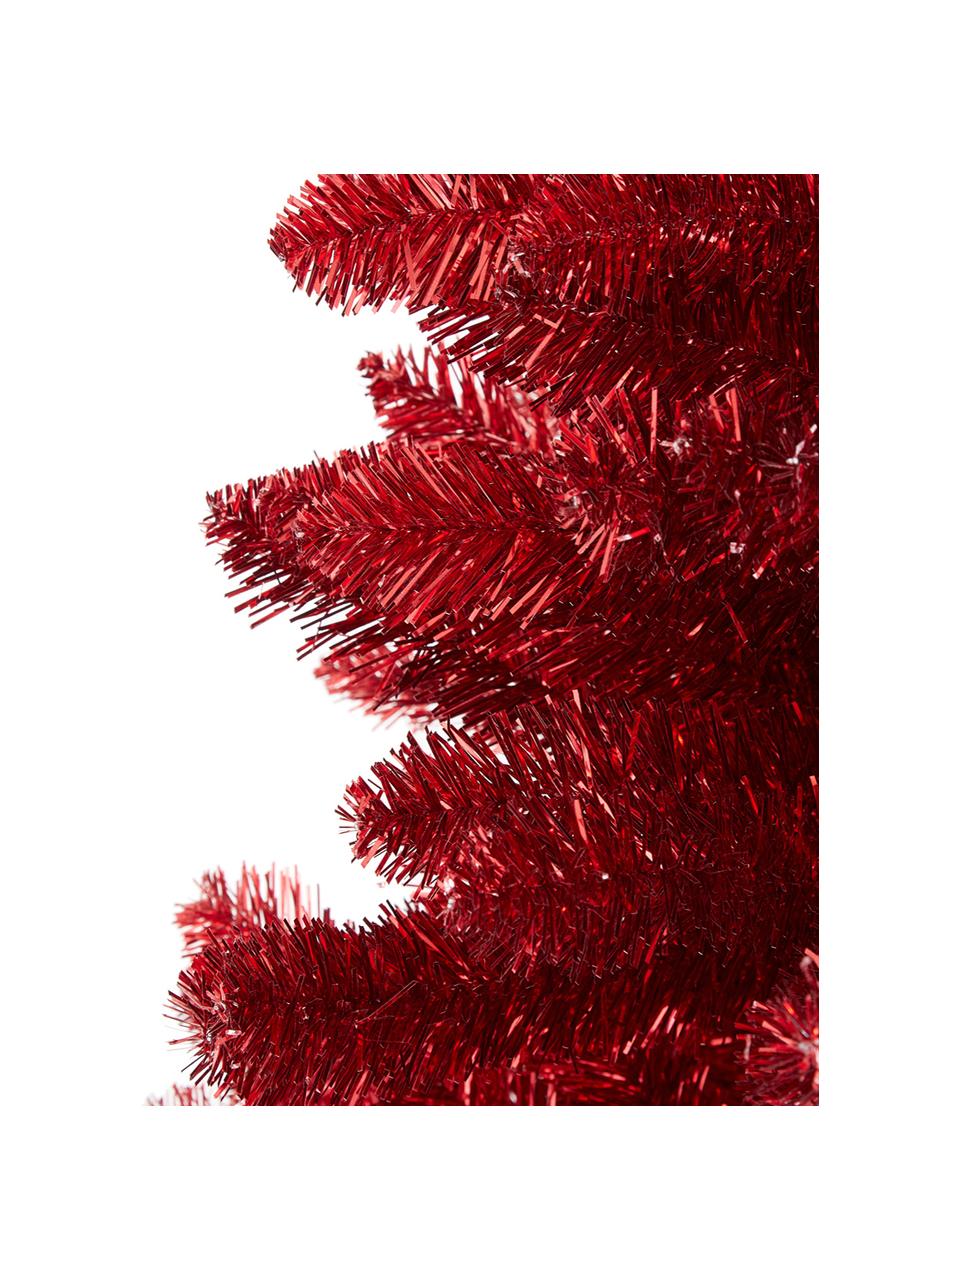 Decoratieve kerstboom Colchester, Kunststof, Rood, Ø 84 cm, H 185 cm